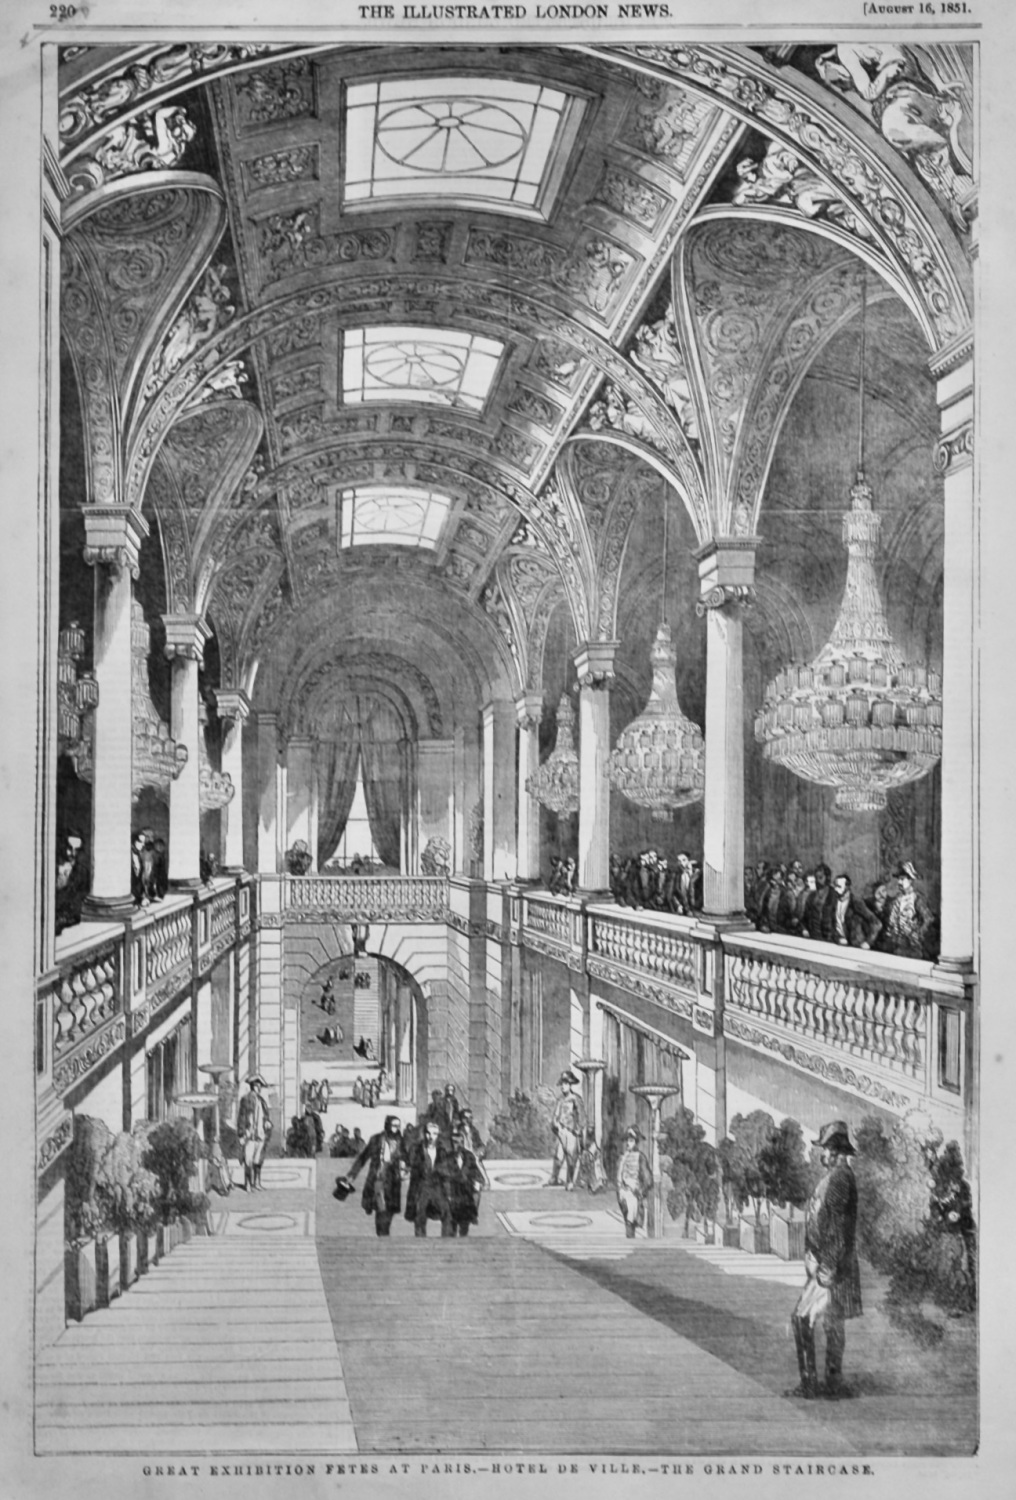 Great Exhibition Fetes at Paris.- Hotel De Ville.- Grand Staircase.  1851.